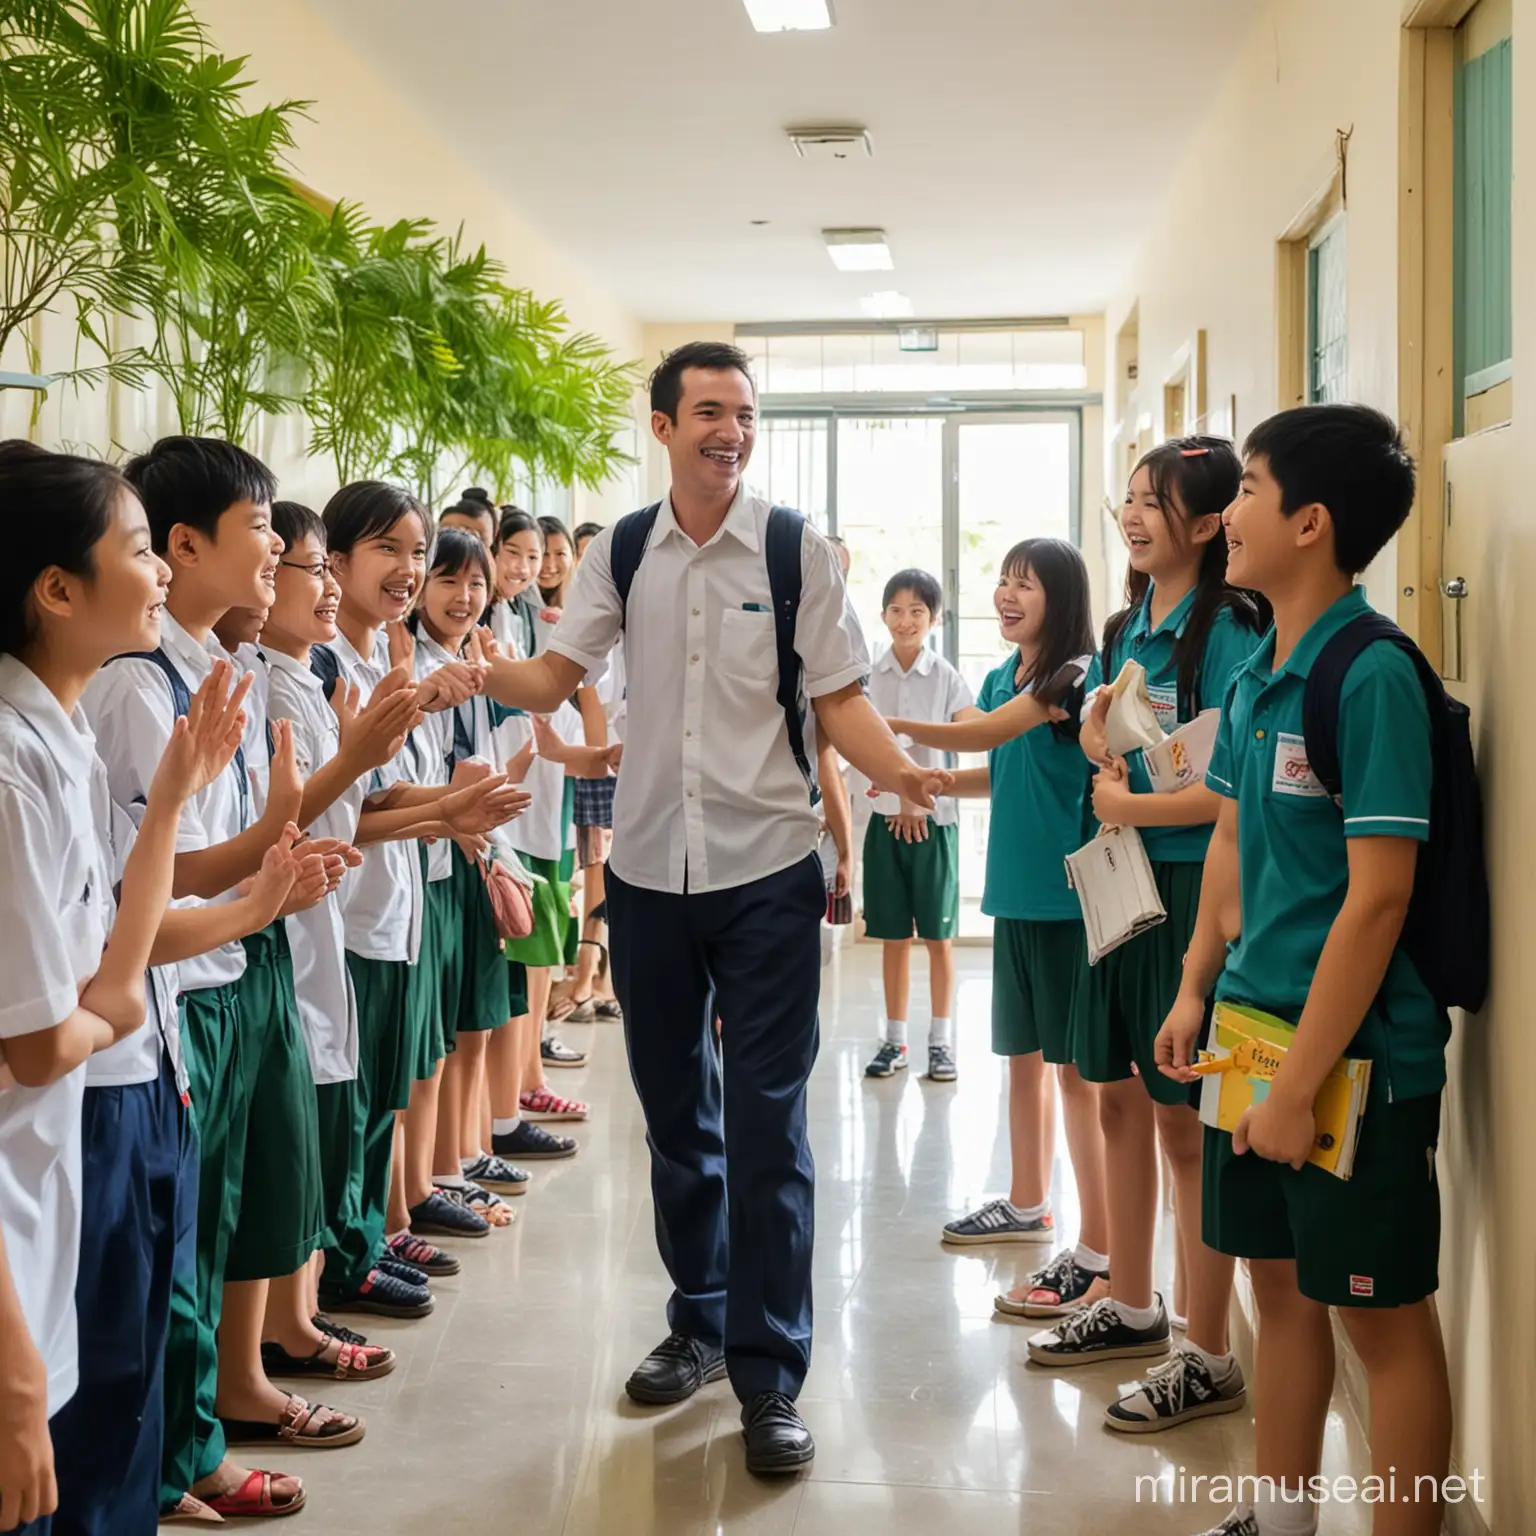 Các bạn học sinh nam, nữ chào thầy cô giáo ở hành lang của trường tiểu học ở Việt Nam. Hình ảnh có anh nắng, cây xanh, mọi người vui vẻ.